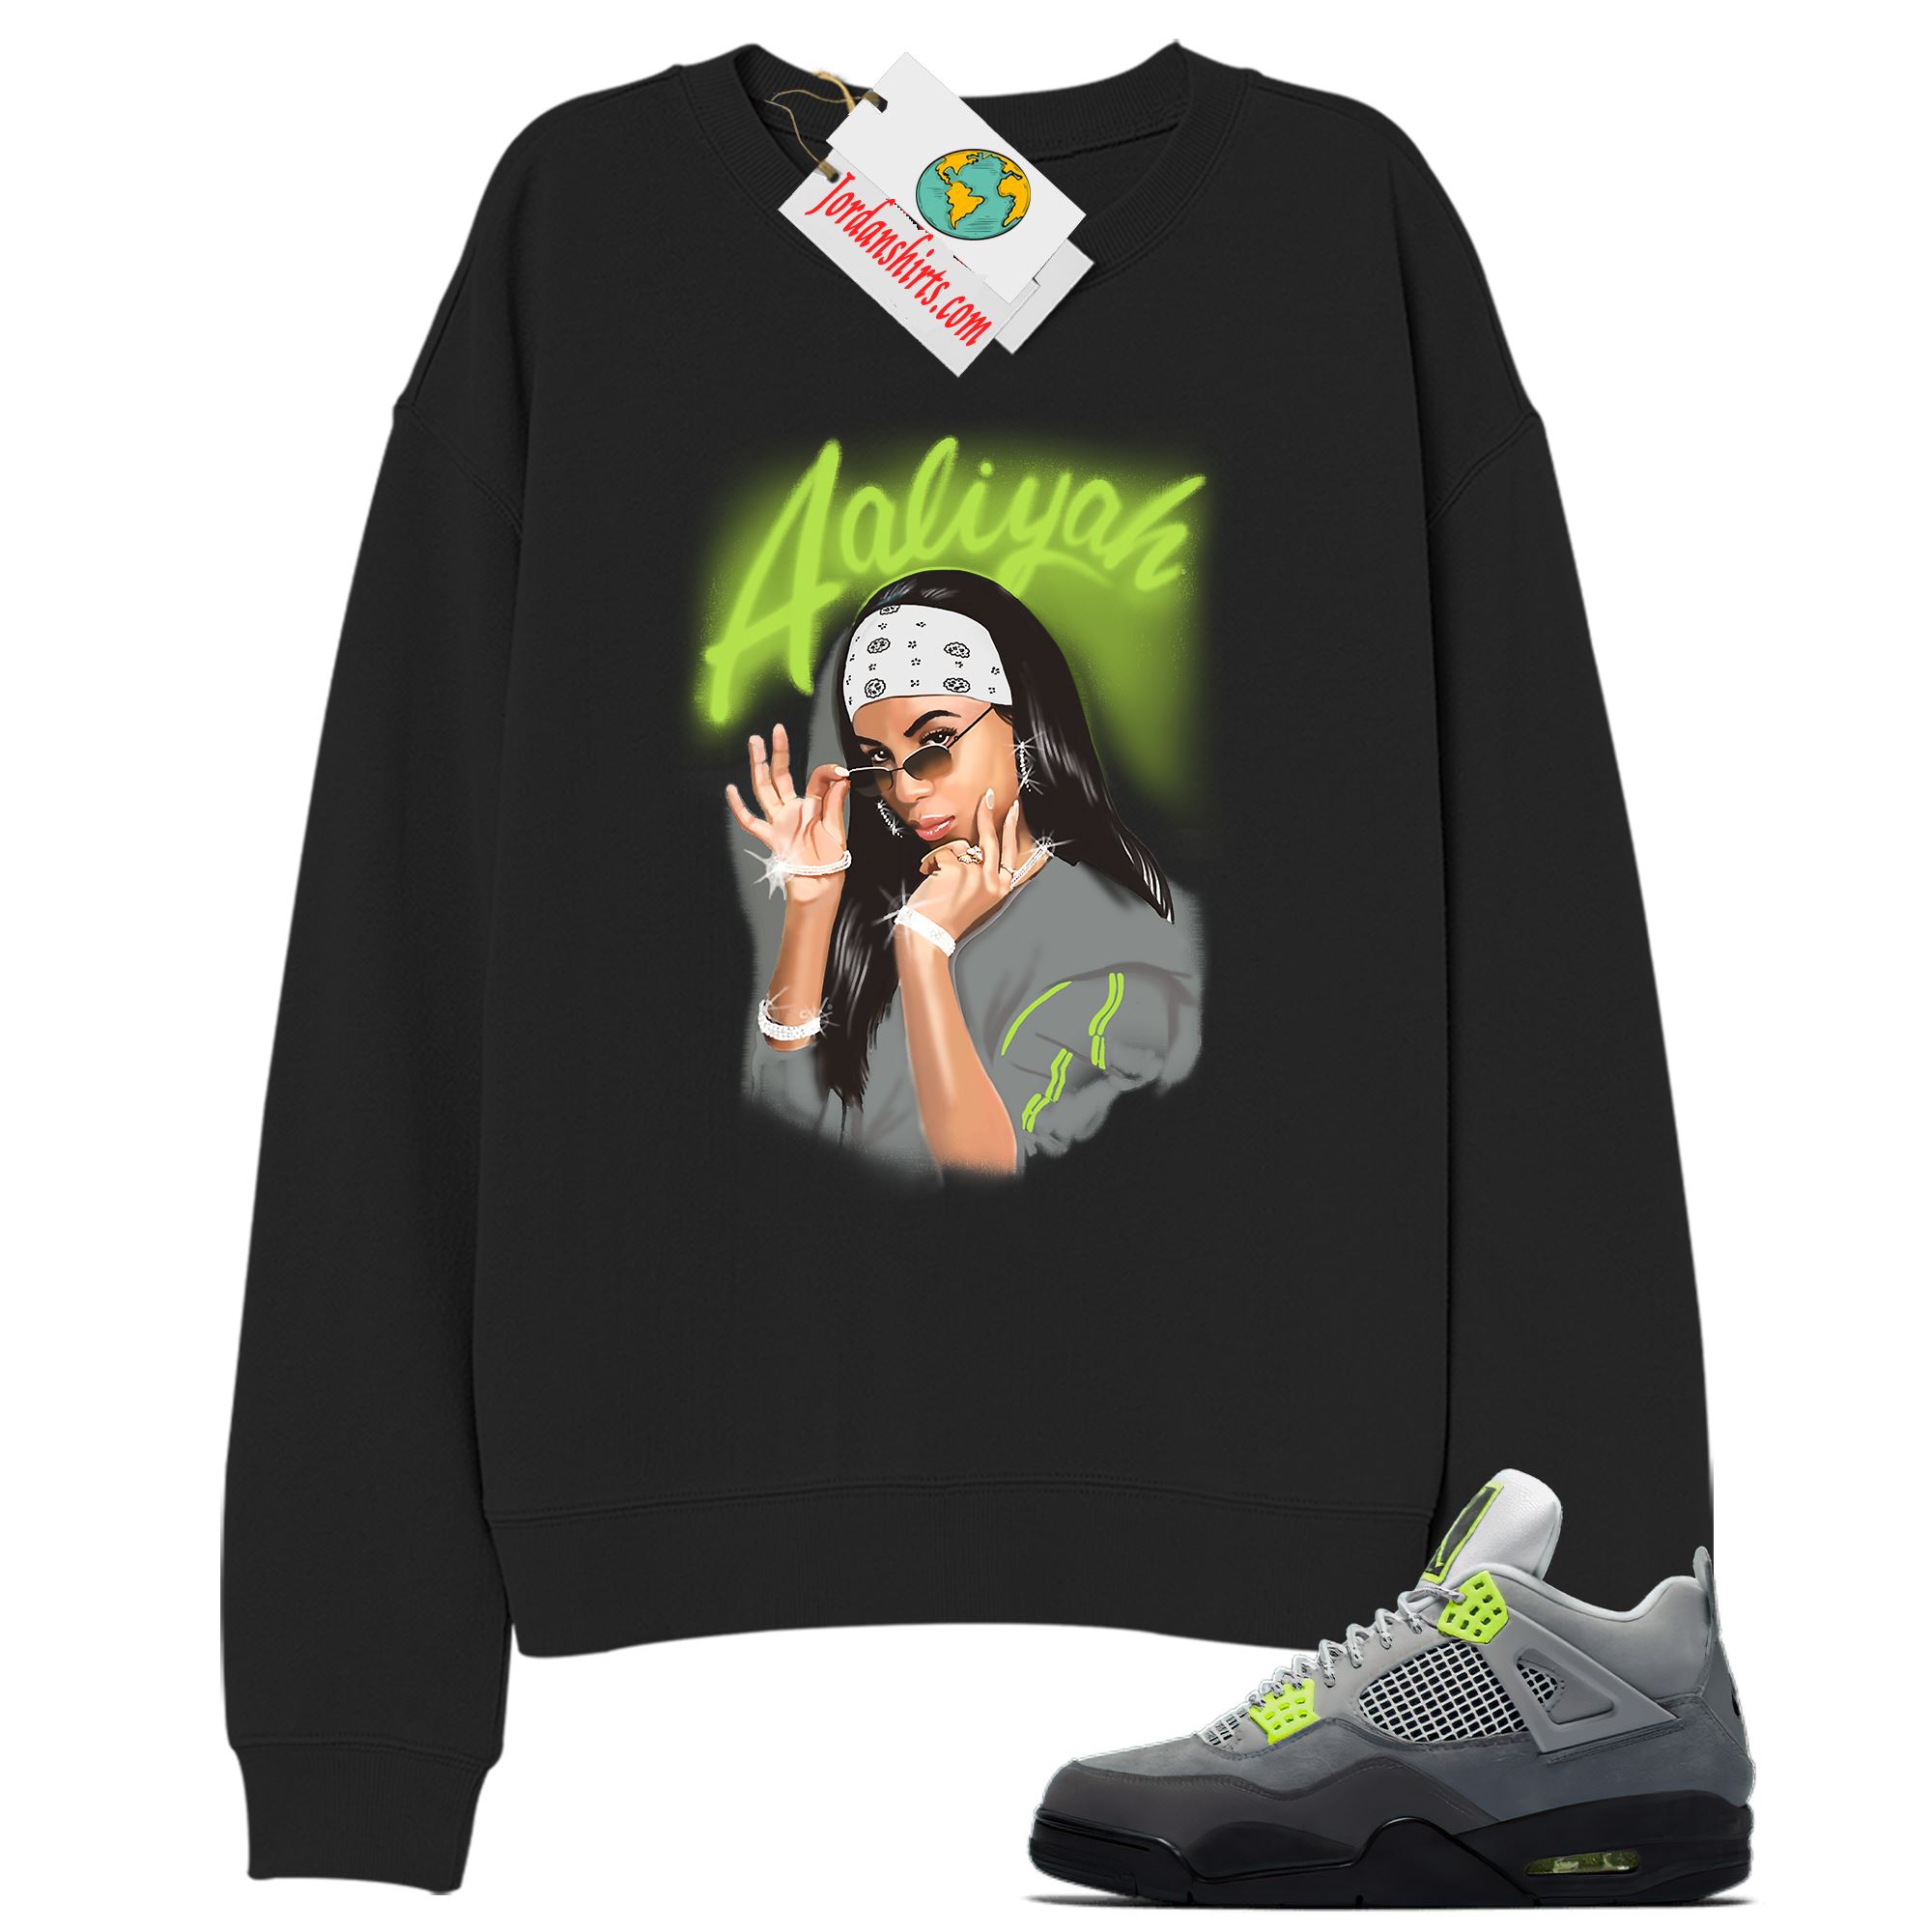 Jordan 4 Sweatshirt, Aaliyah Airbrush Black Sweatshirt Air Jordan 4 Neon 95 4s Size Up To 5xl